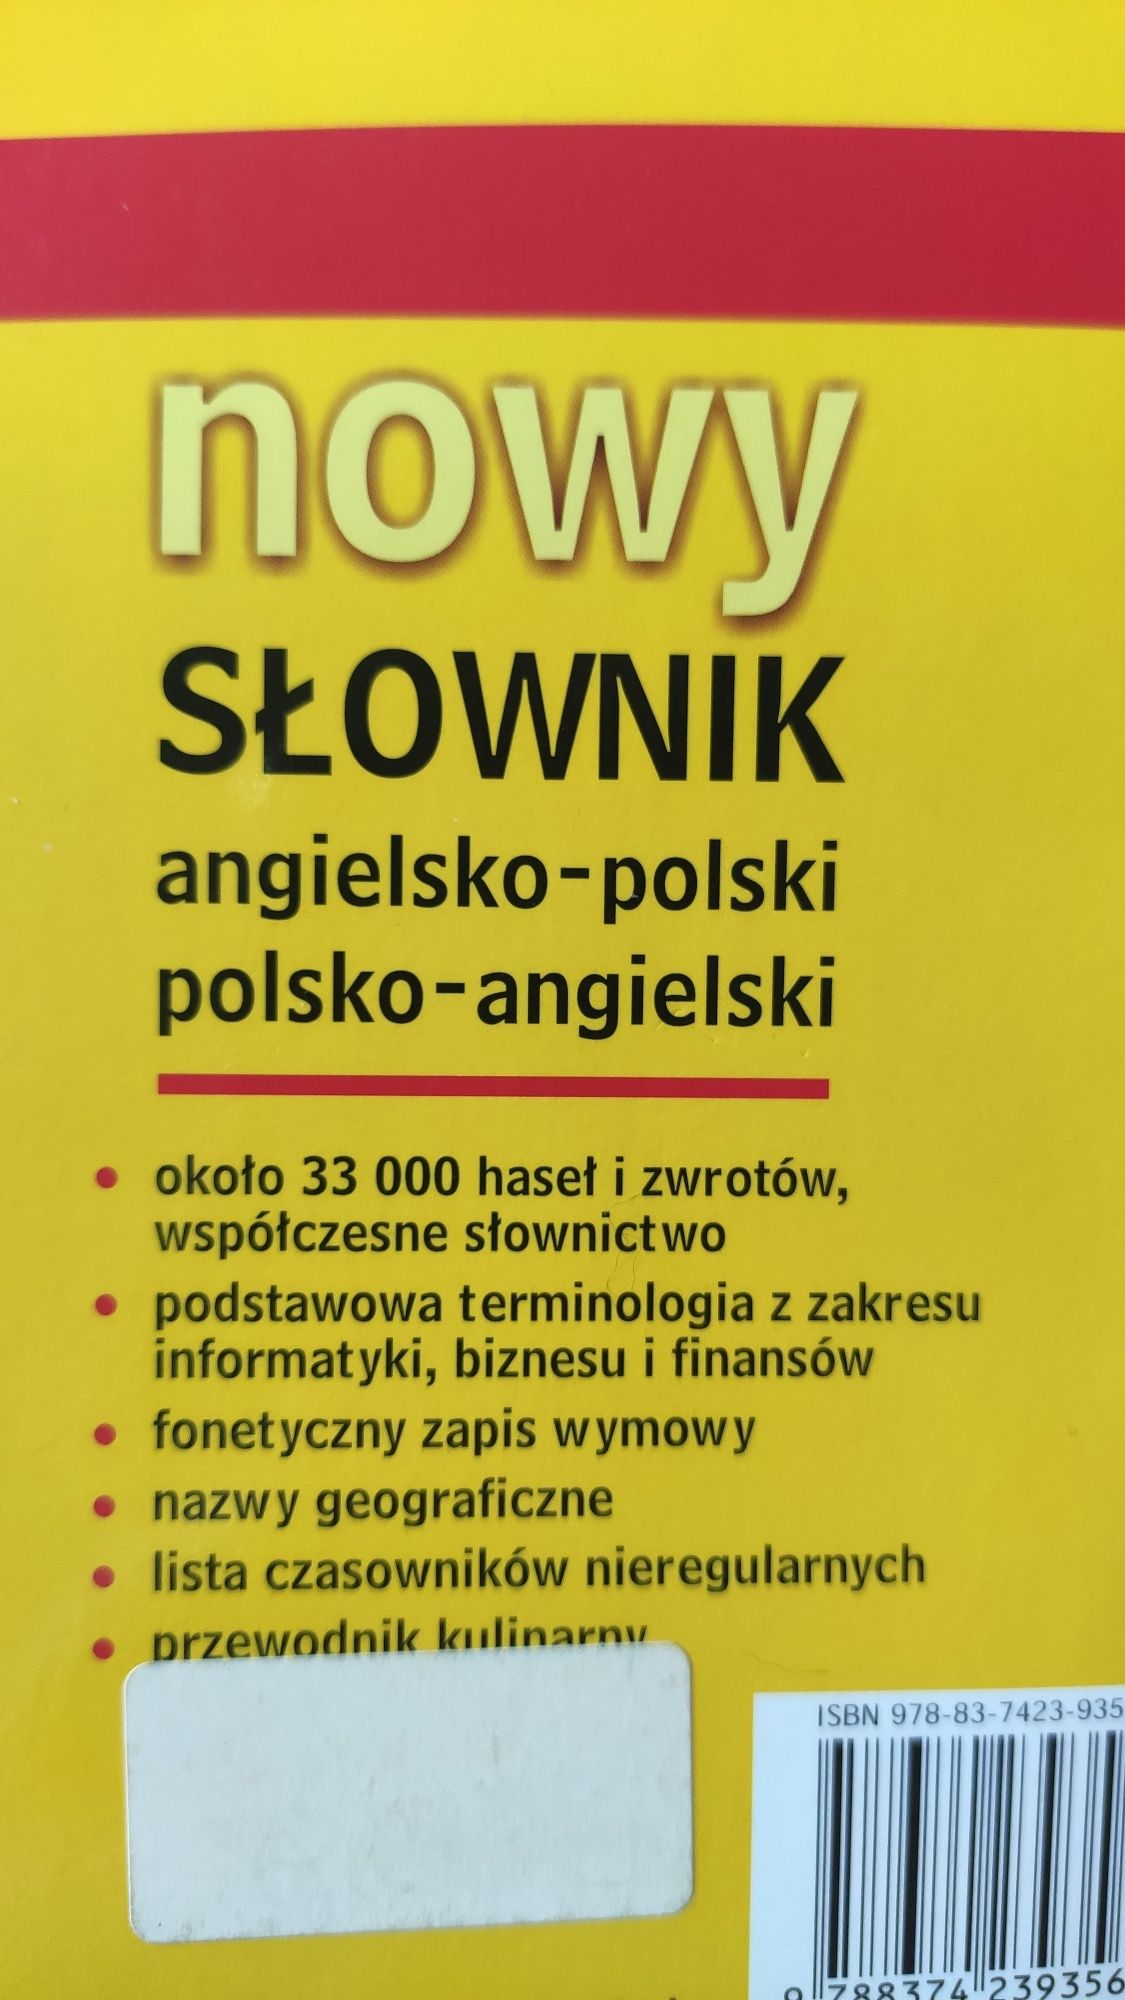 Nowy słownik angielsko-polski polsko-angielski. Harald G. Nieużywany